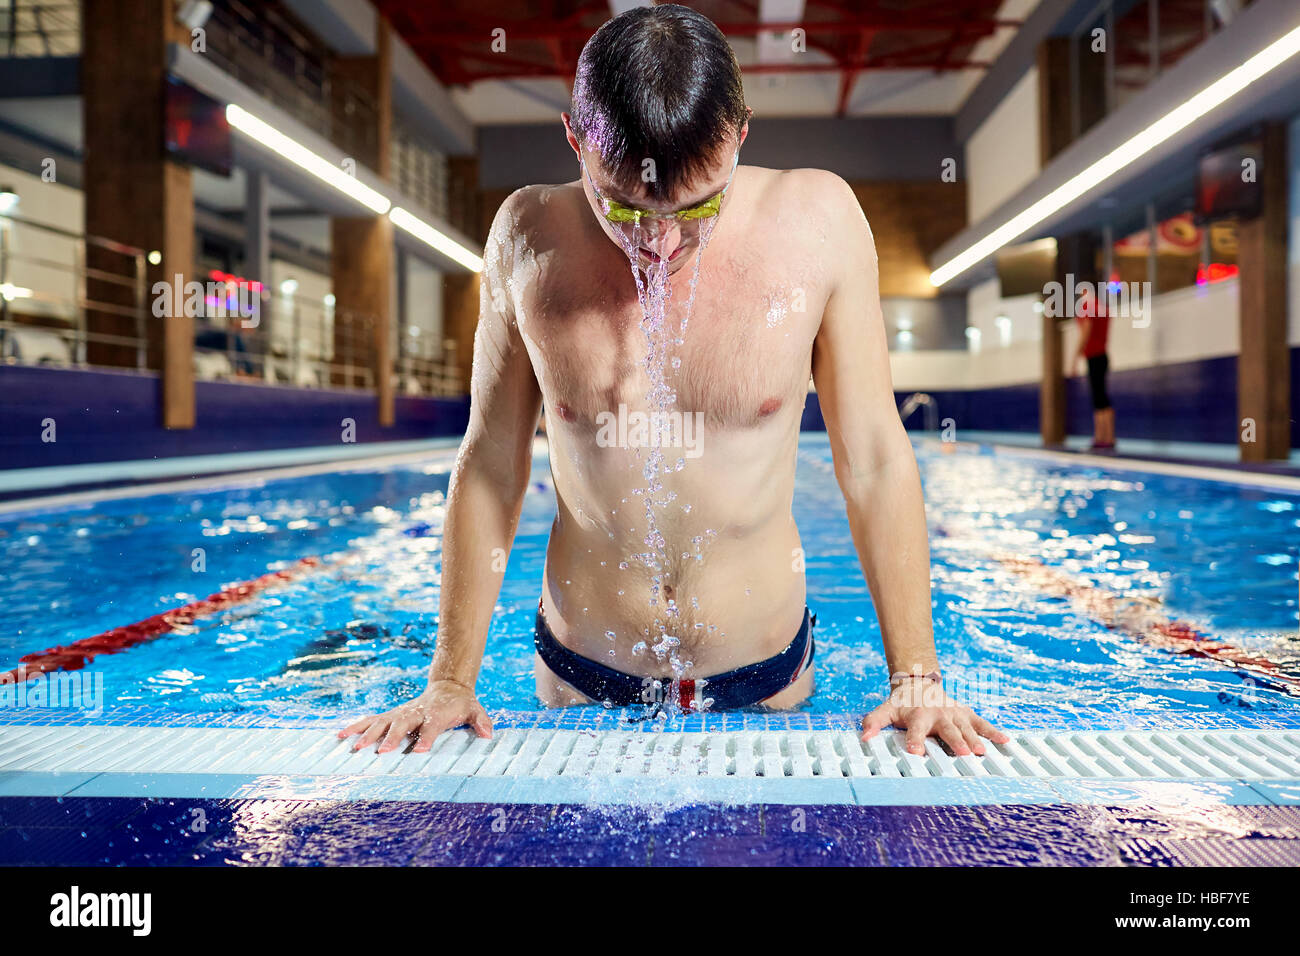 Nuotatore emerge dall'acqua piscina con schizzi in ambienti chiusi. Foto Stock